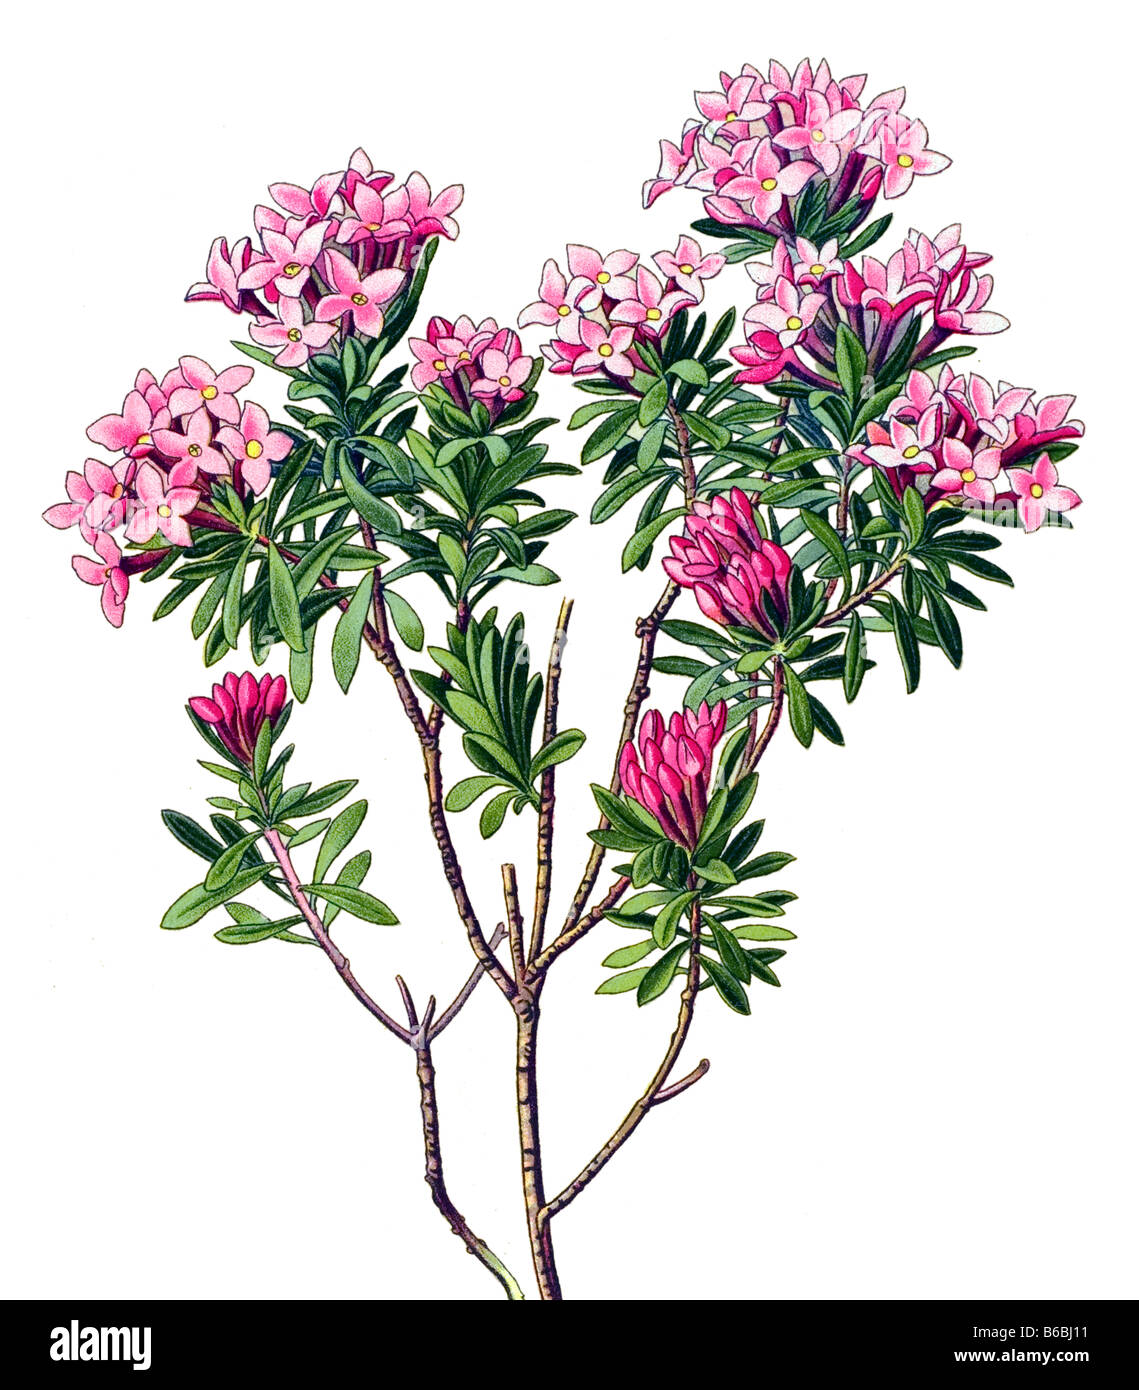 Daphne Cneorum, poisonous plants illustrations Stock Photo